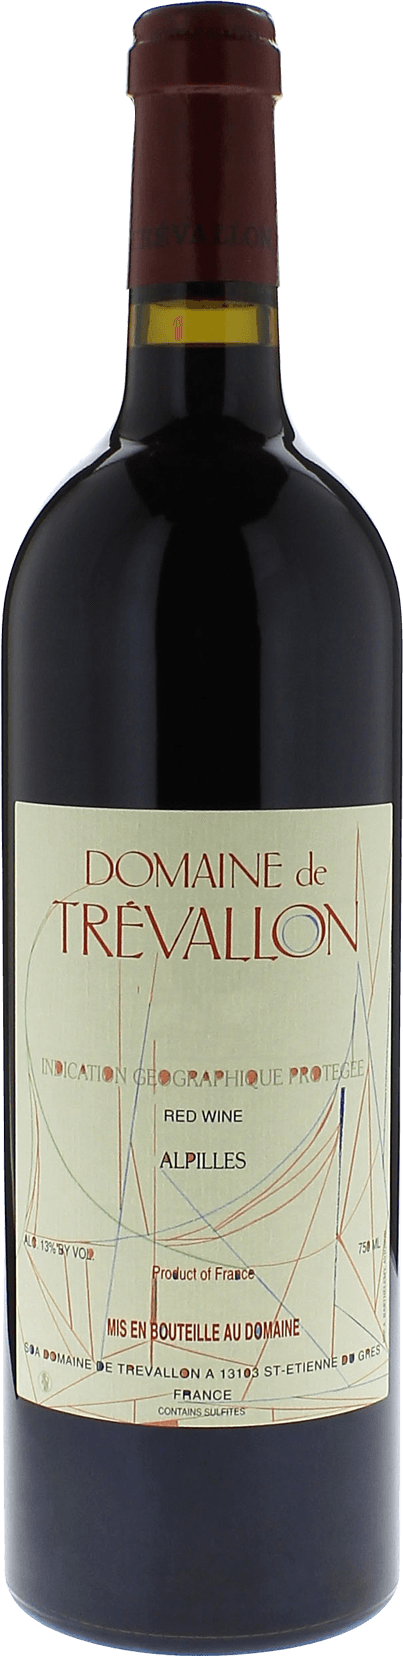 Domaine de trevallon rouge 1994  IGP Alpilles, Provence